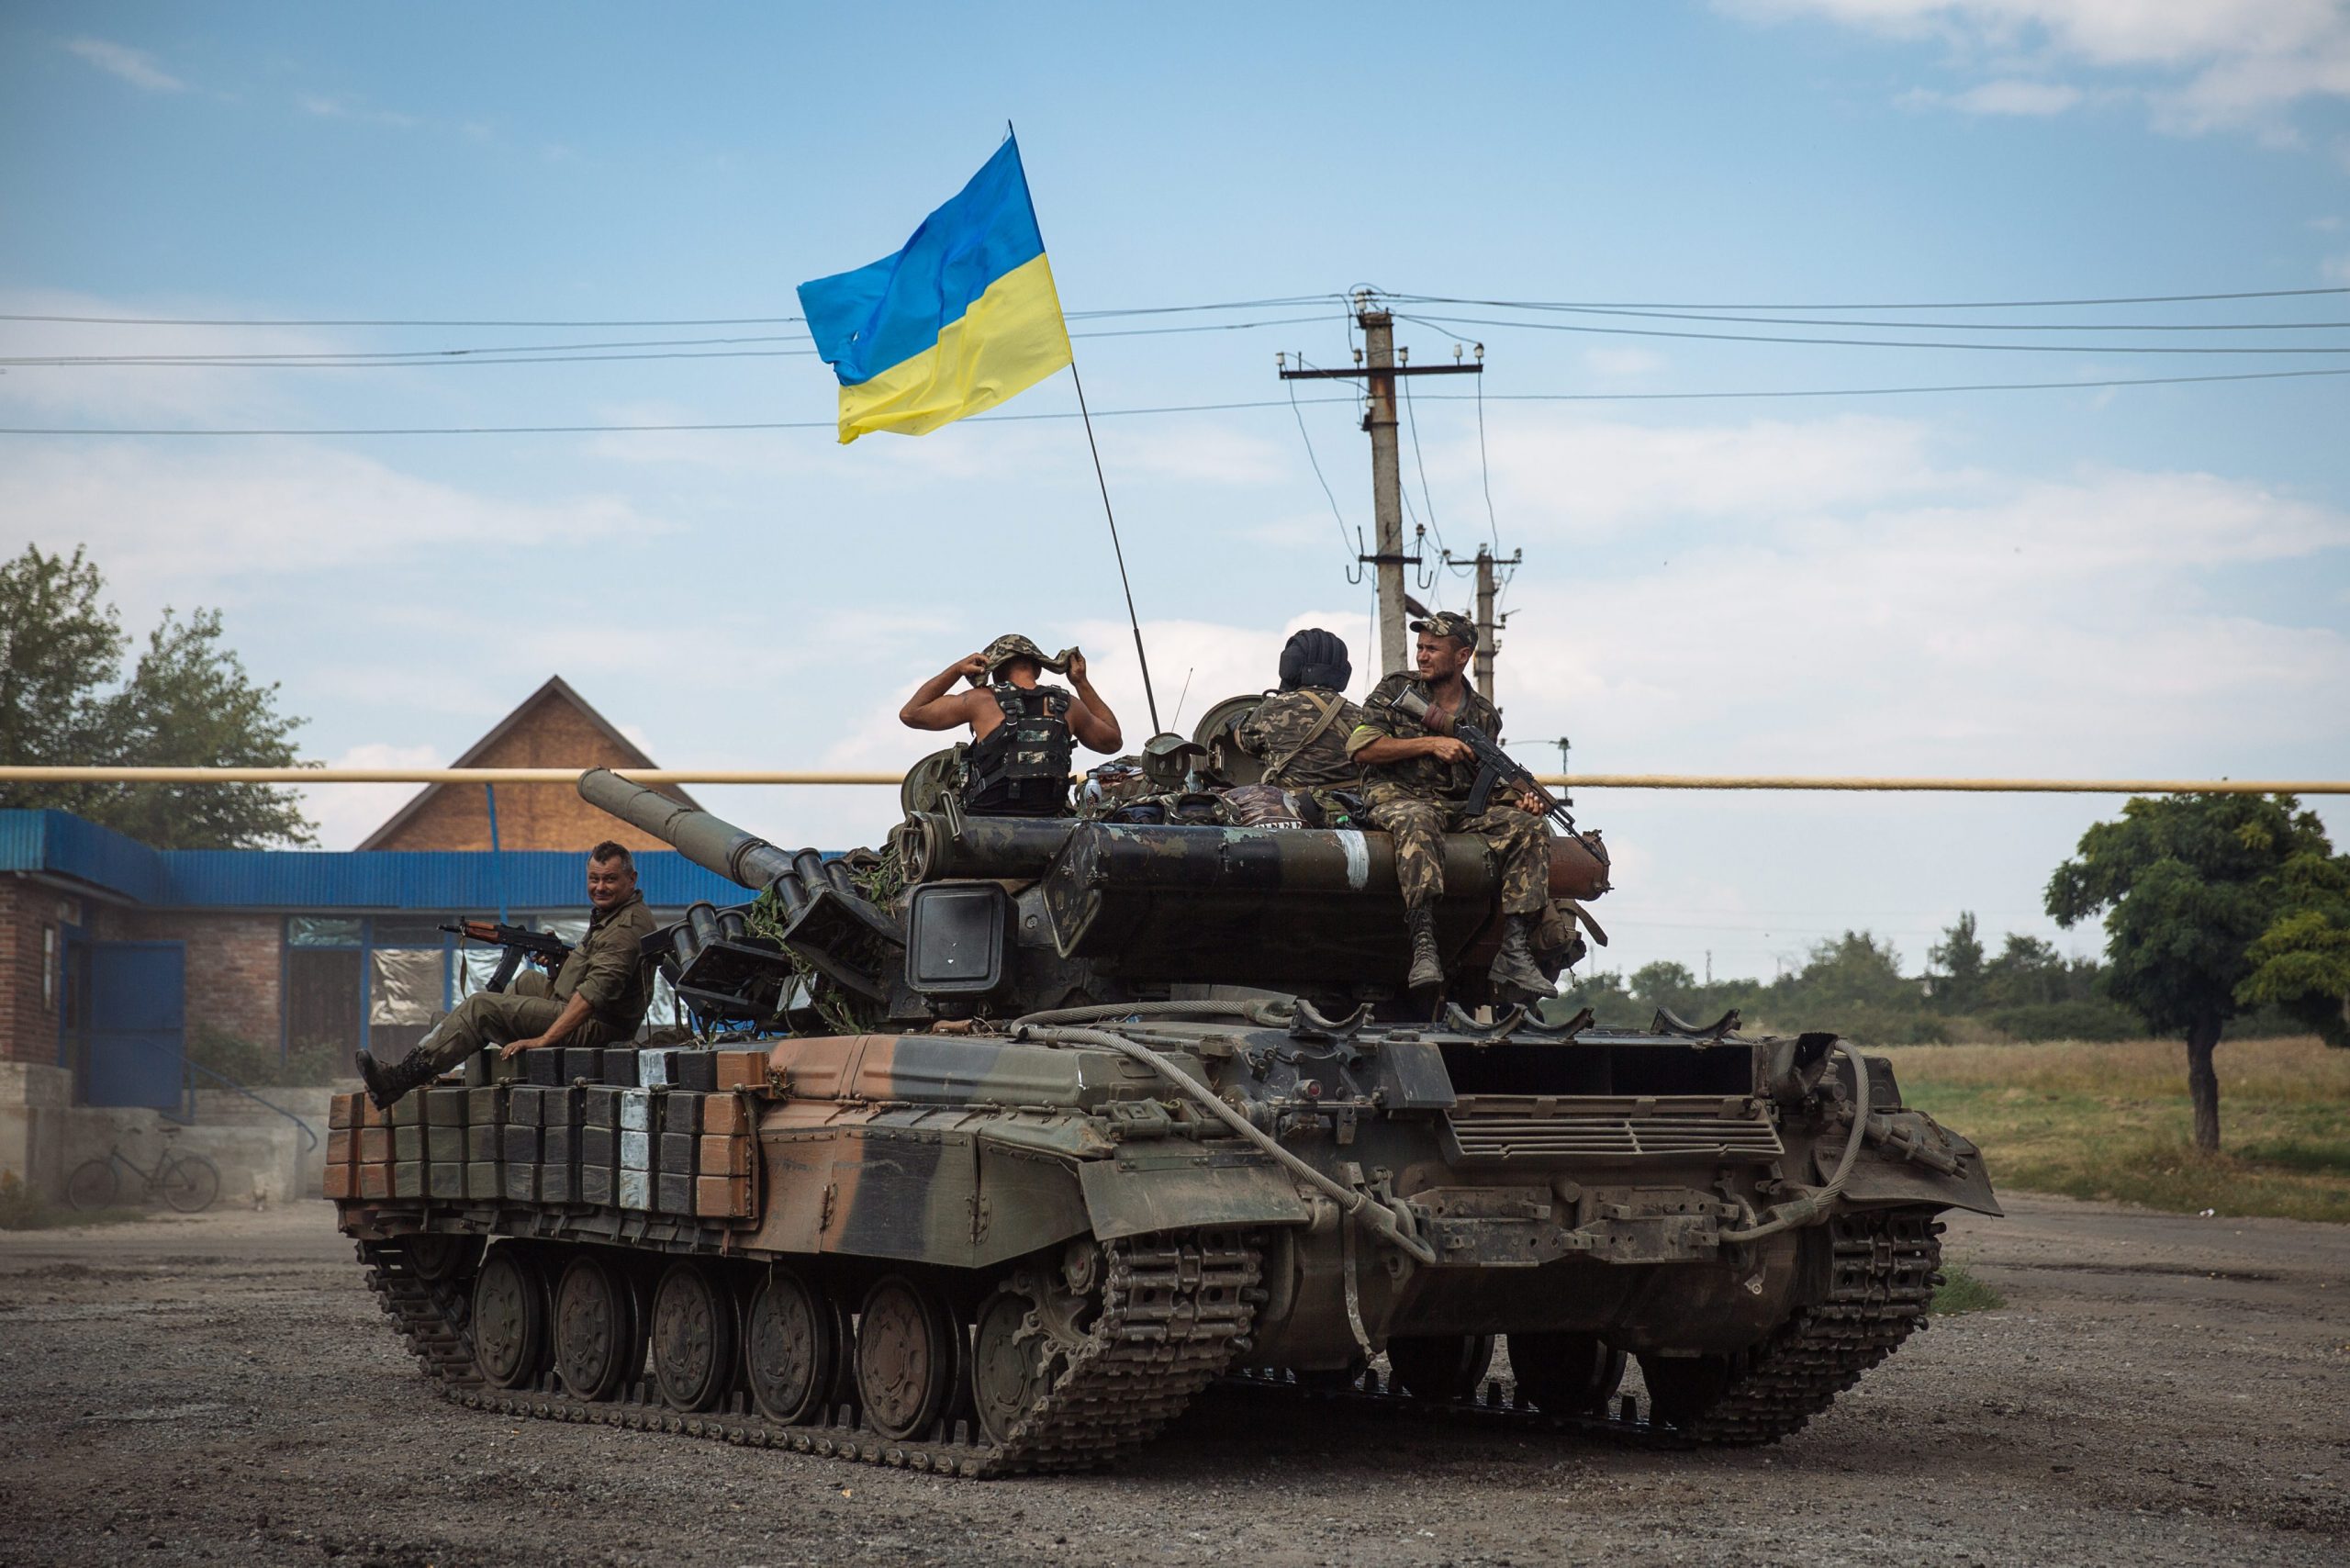 As U.S. Wavers on Ukraine Aid, Europe Steps Up